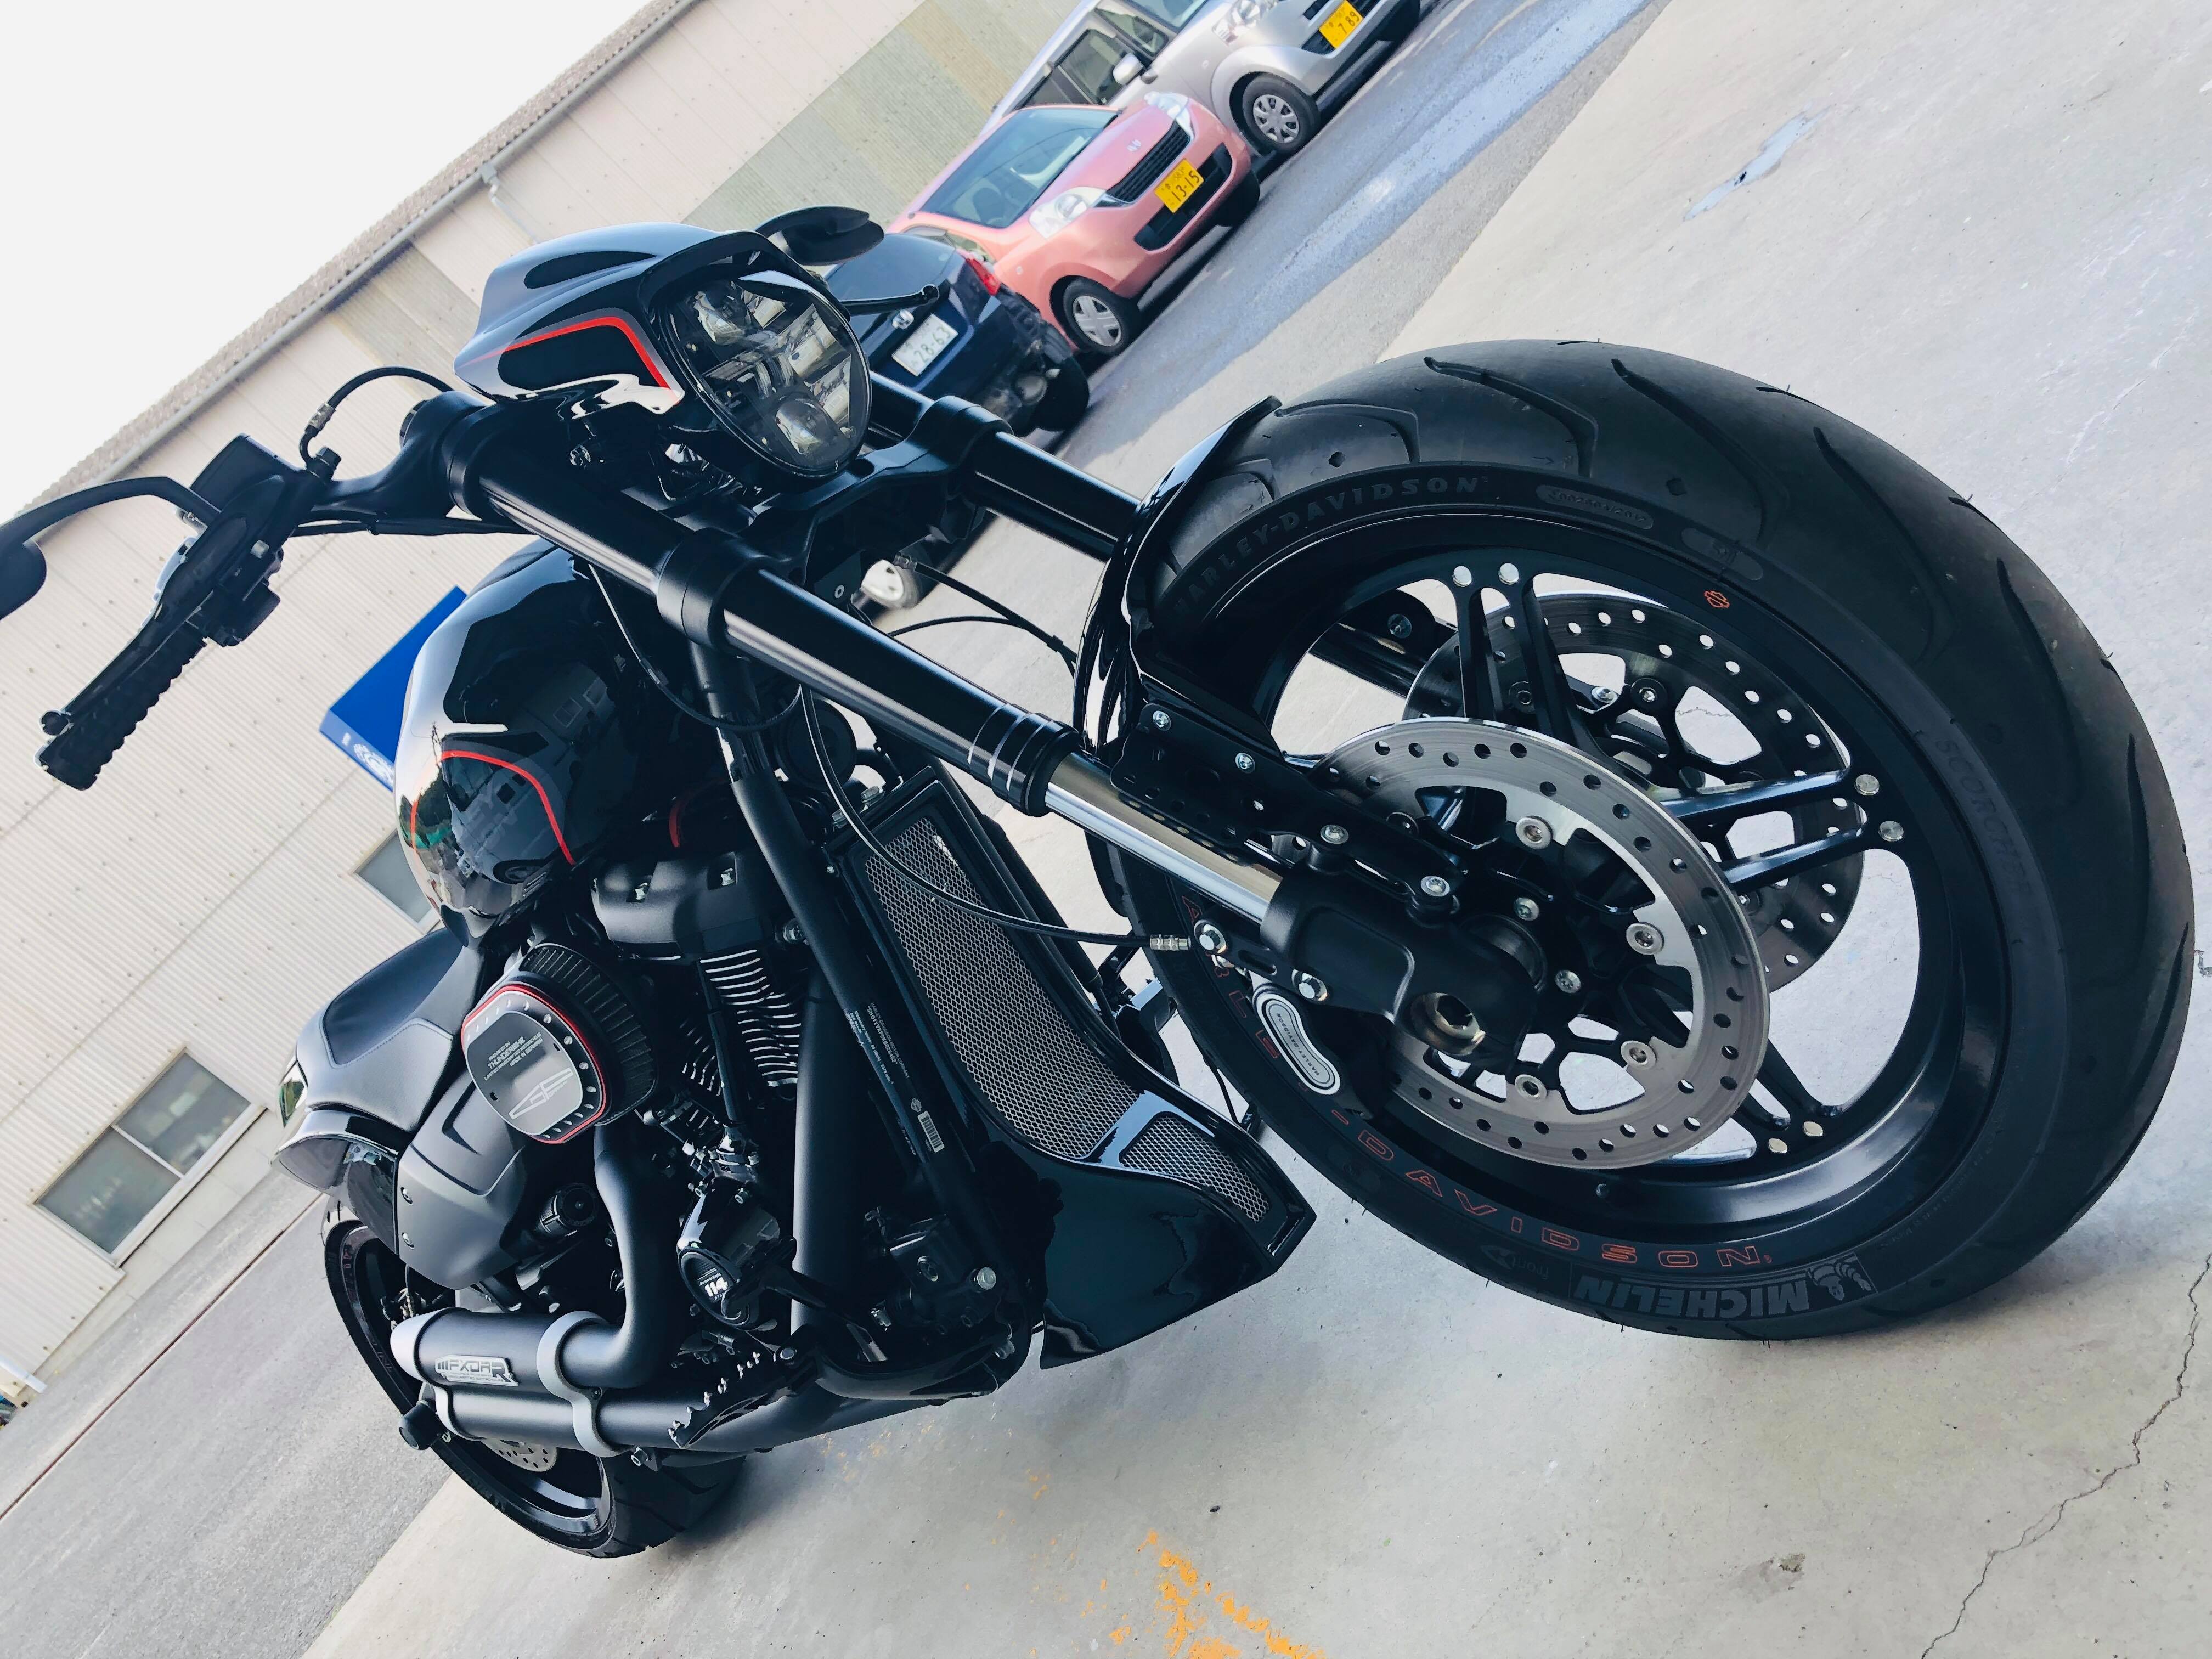 Thunder Bike 2018 Fxdr アビスオートブティック X ハーレーダビッドソン高松 ハーレー カスタム ワールド Harley Custom World